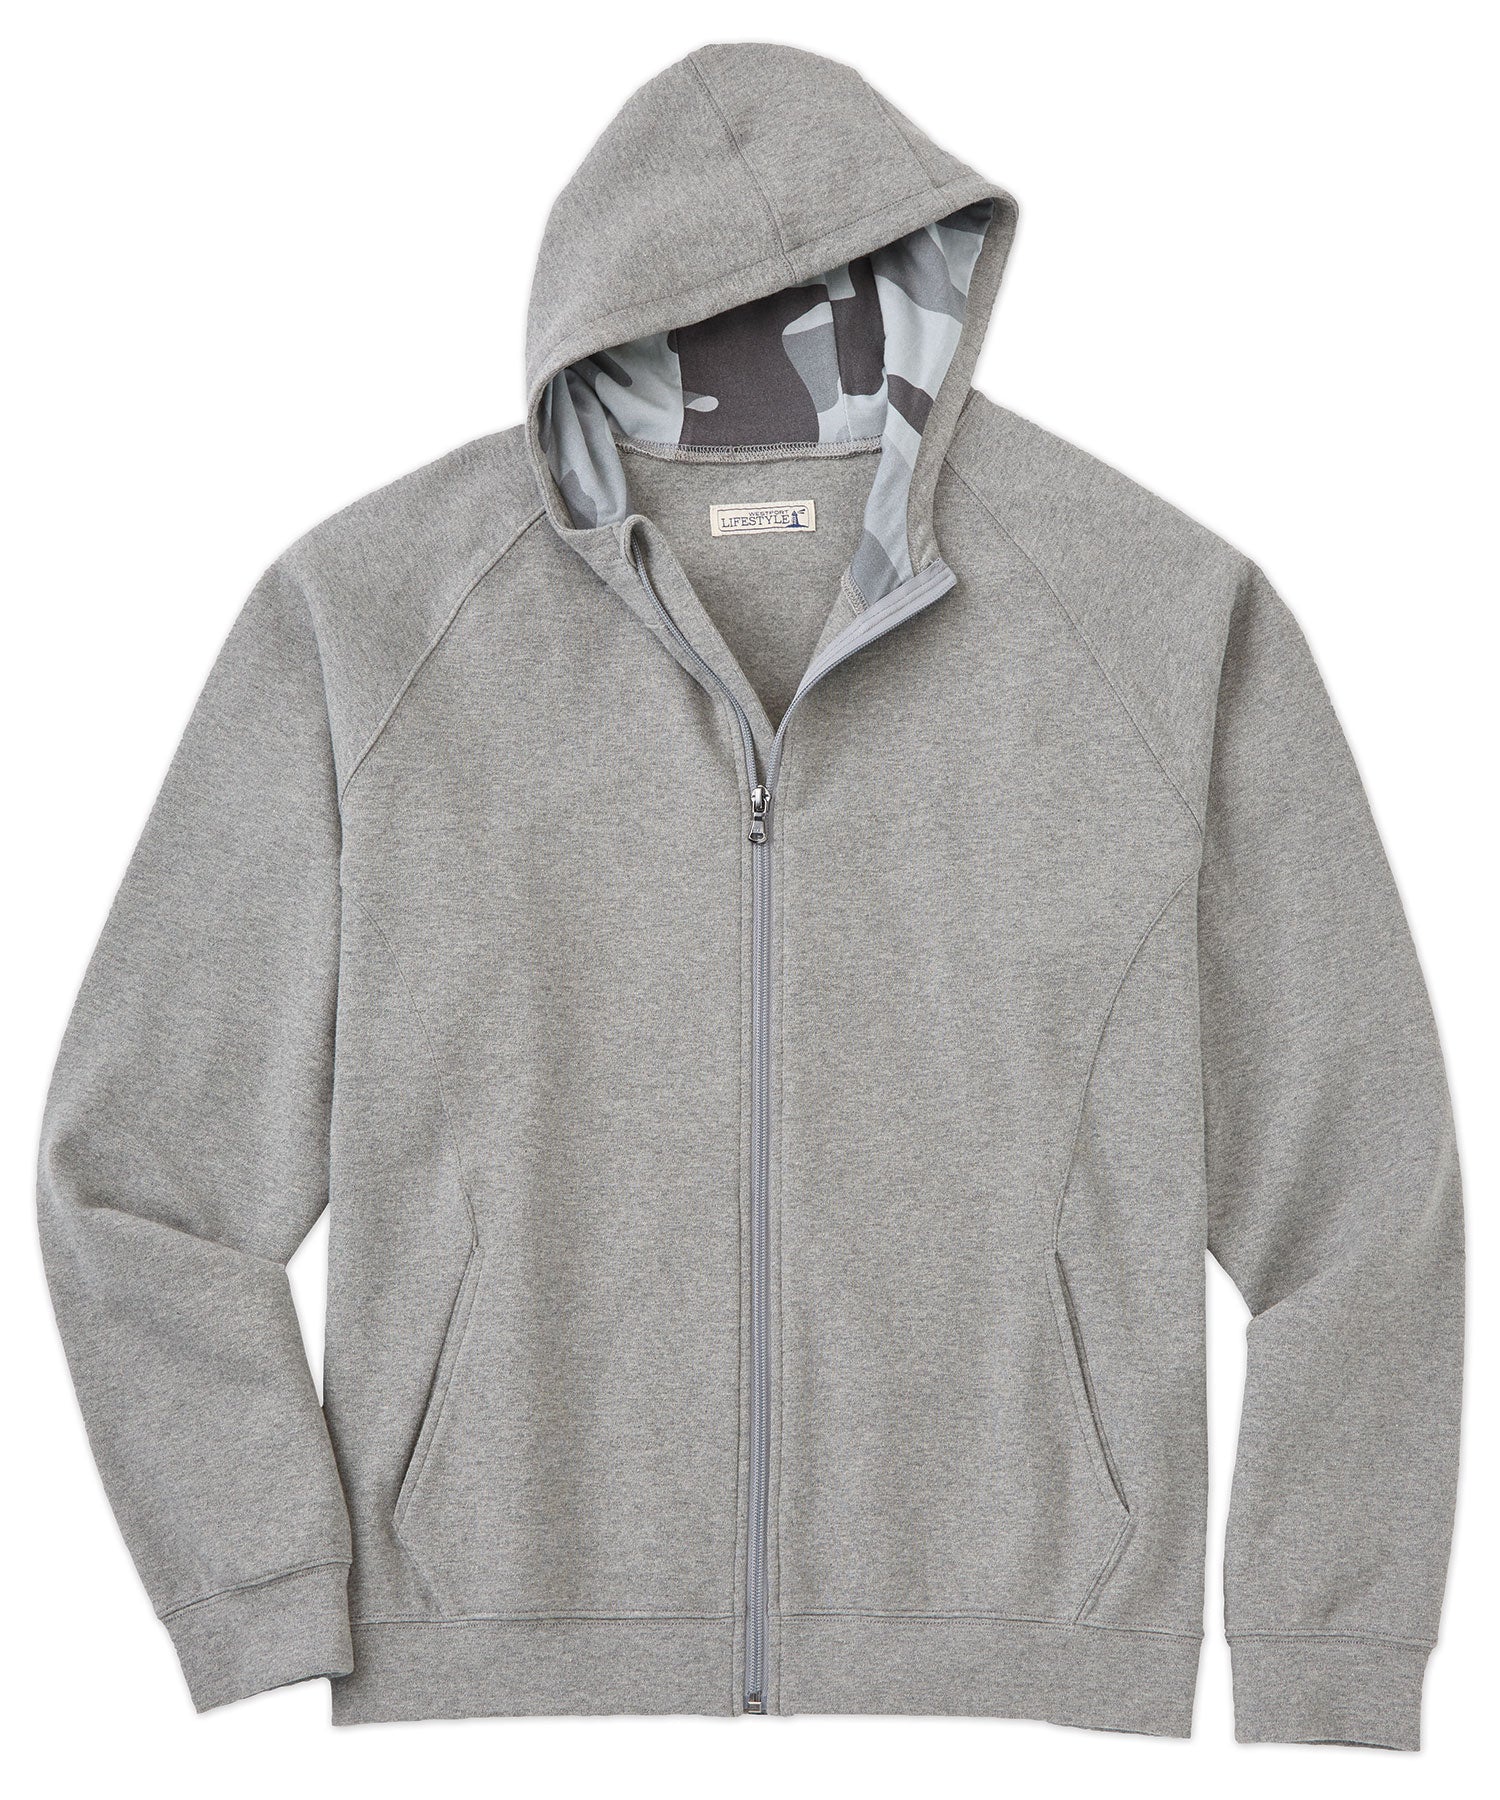 Westport Lifestyle Luxe Fleece Full Zip Hooded Jacket, Men's Big & Tall